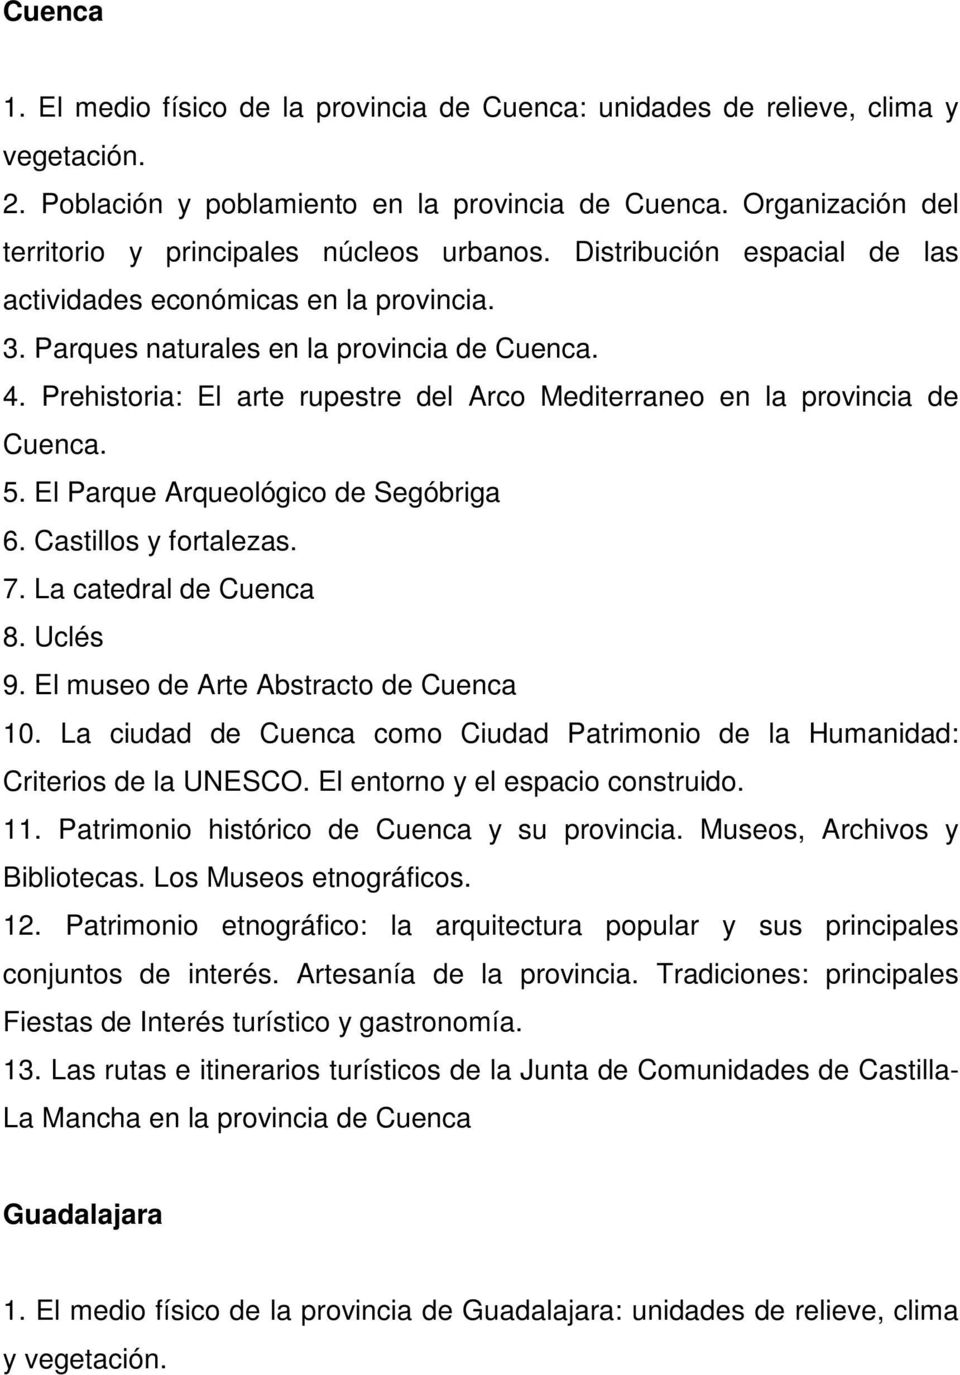 El museo de Arte Abstracto de Cuenca 10. La ciudad de Cuenca como Ciudad Patrimonio de la Humanidad: Criterios de la UNESCO. El entorno y el espacio construido. 11.